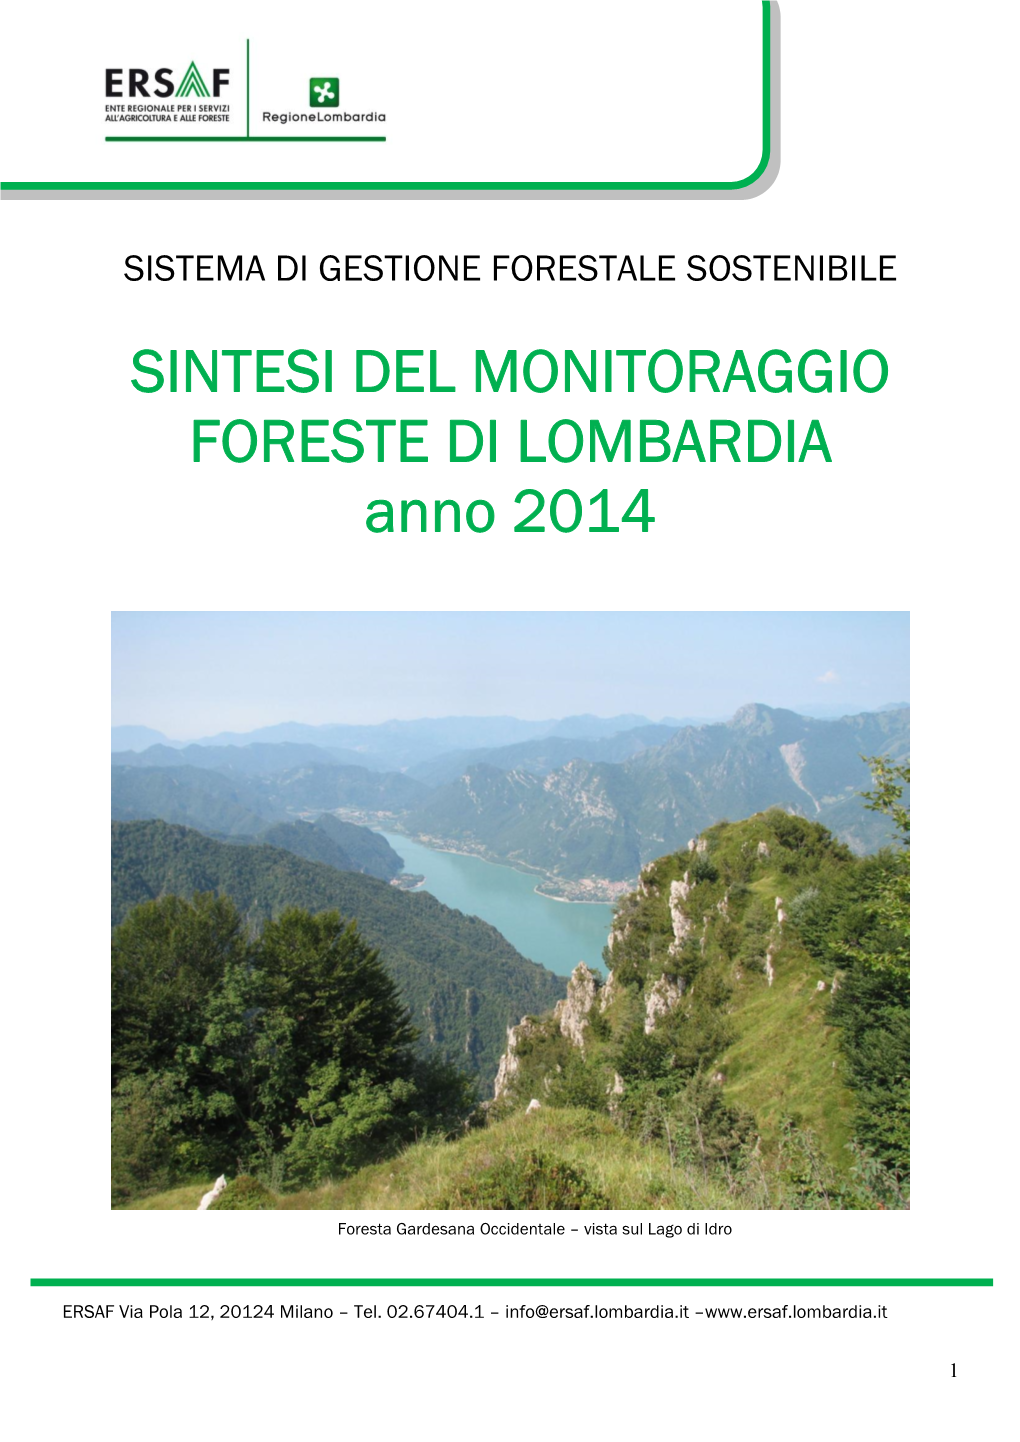 SINTESI DEL MONITORAGGIO FORESTE DI LOMBARDIA Anno 2014